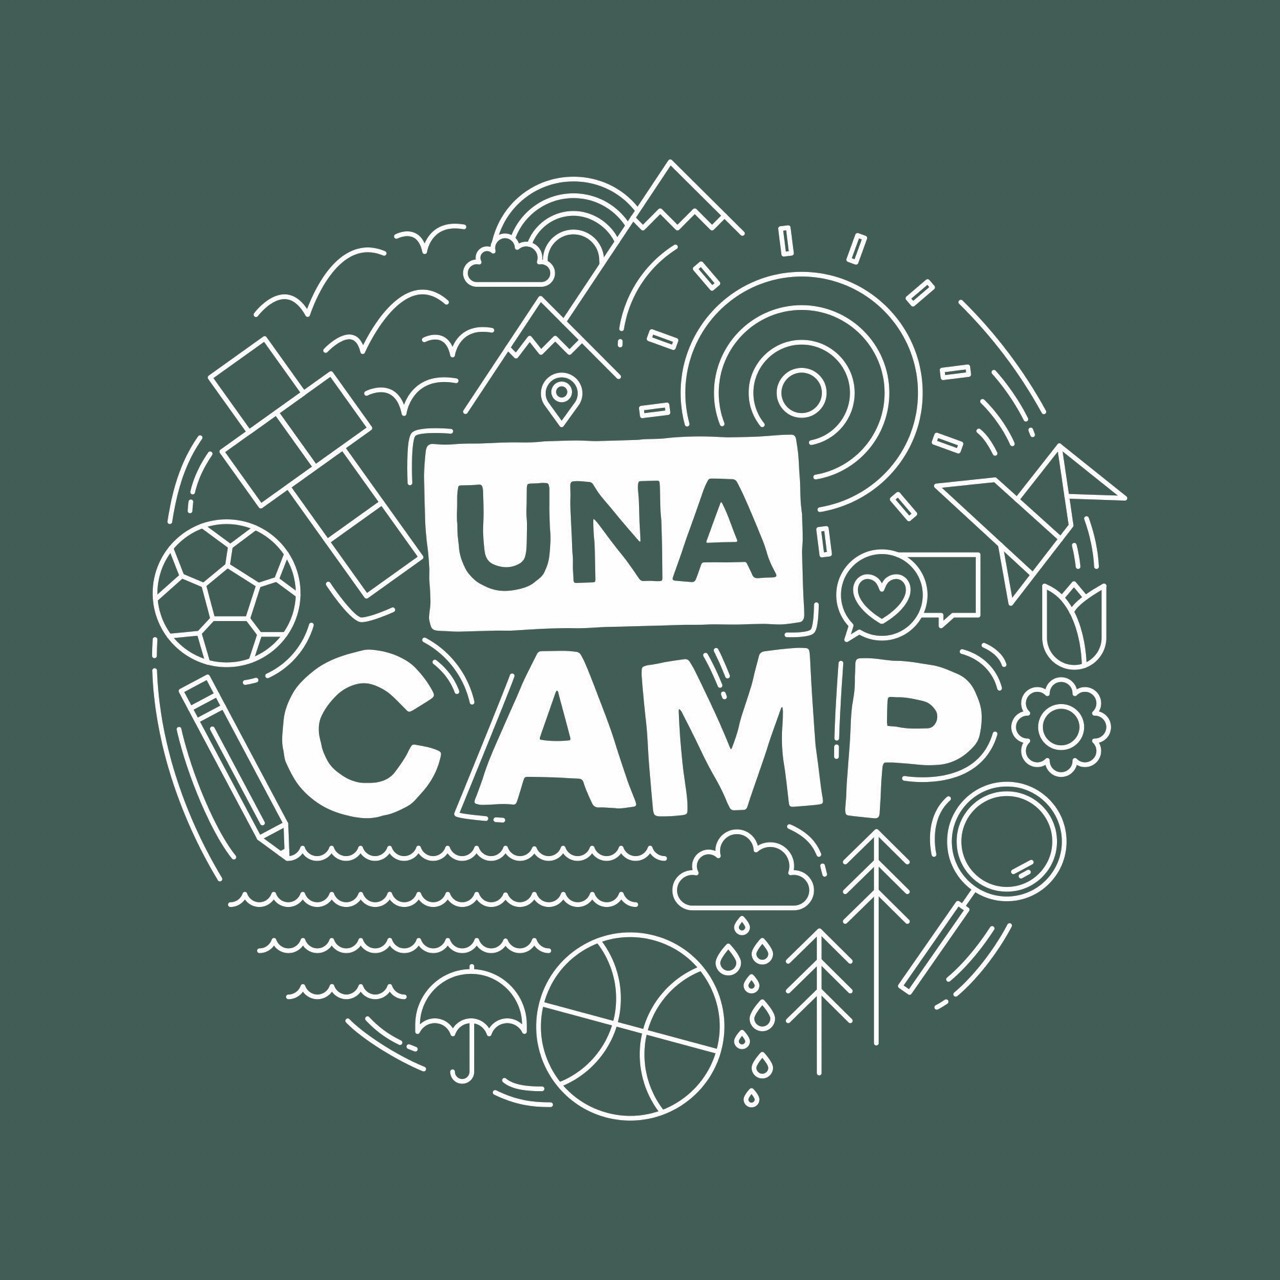 UNA University Neighbourhoods Association UBC Kids Camp T-Shirt Designs by Alicia Carvalho | www.alicia-carvalho.com